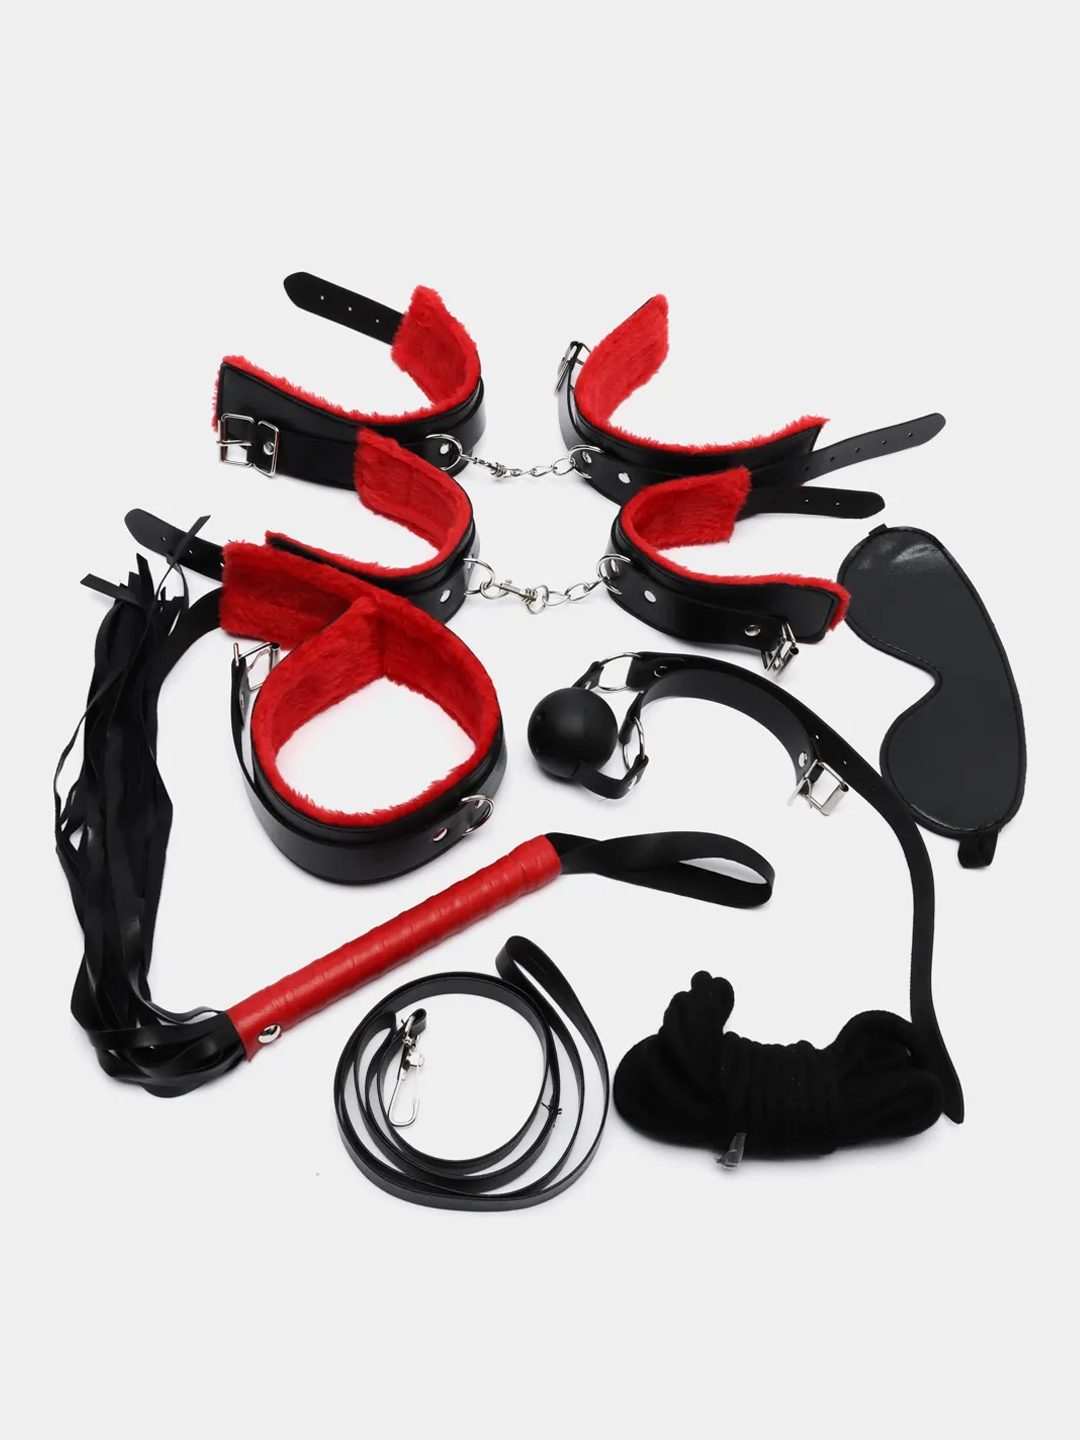 БДСМ-набор для связывания и обездвиживания, 7 предметов купить по цене 599  ₽ в интернет-магазине KazanExpress